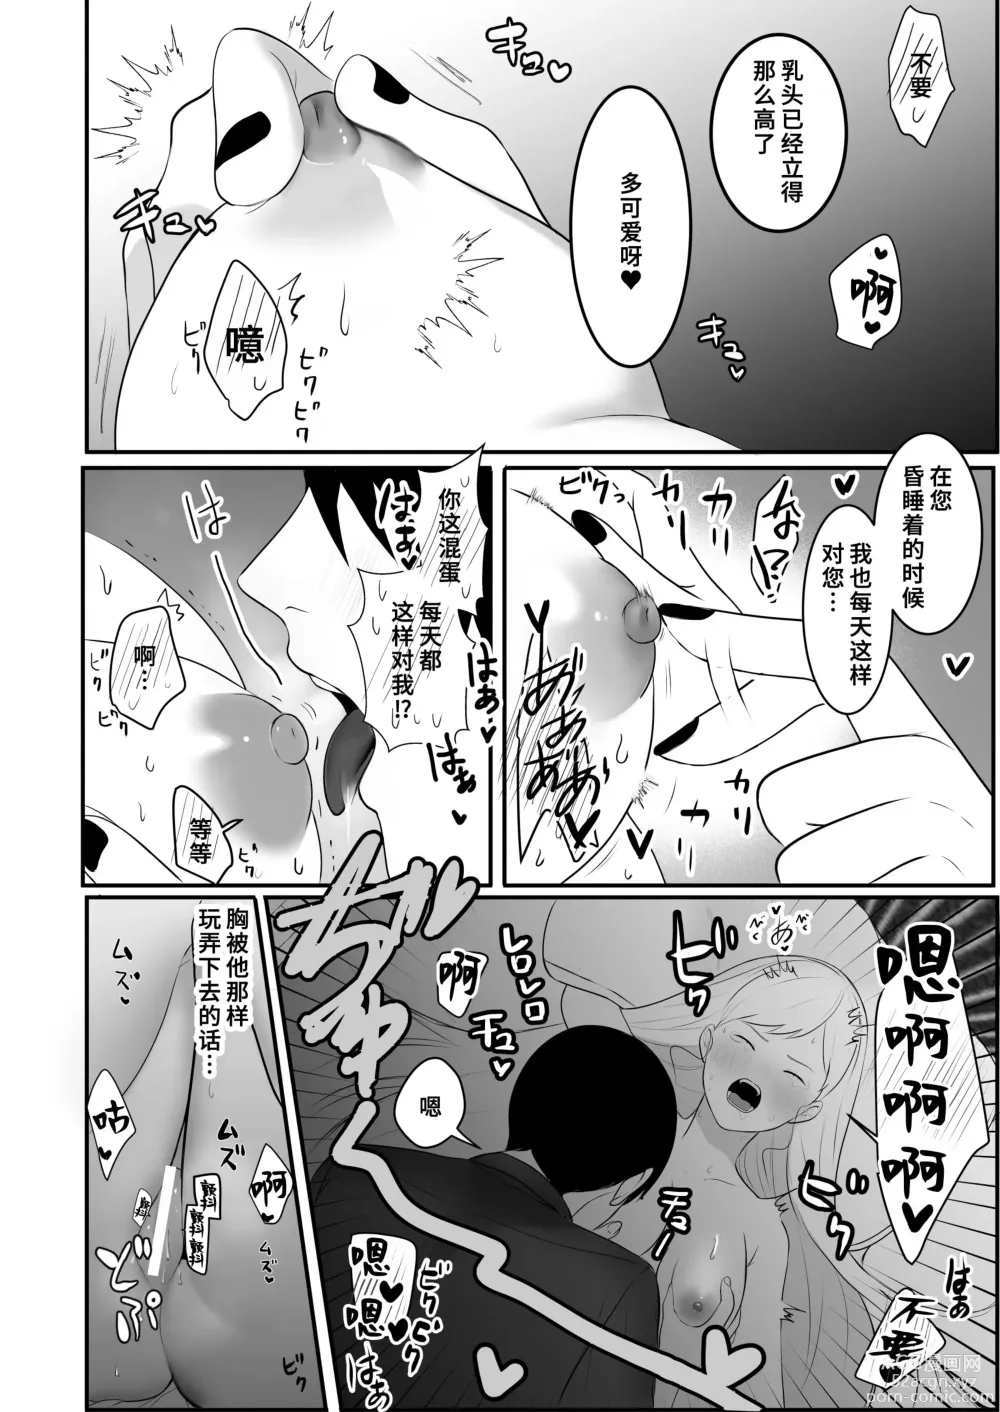 Page 13 of doujinshi 原天才魔法士被敌对死灵法师死缠烂打不放手